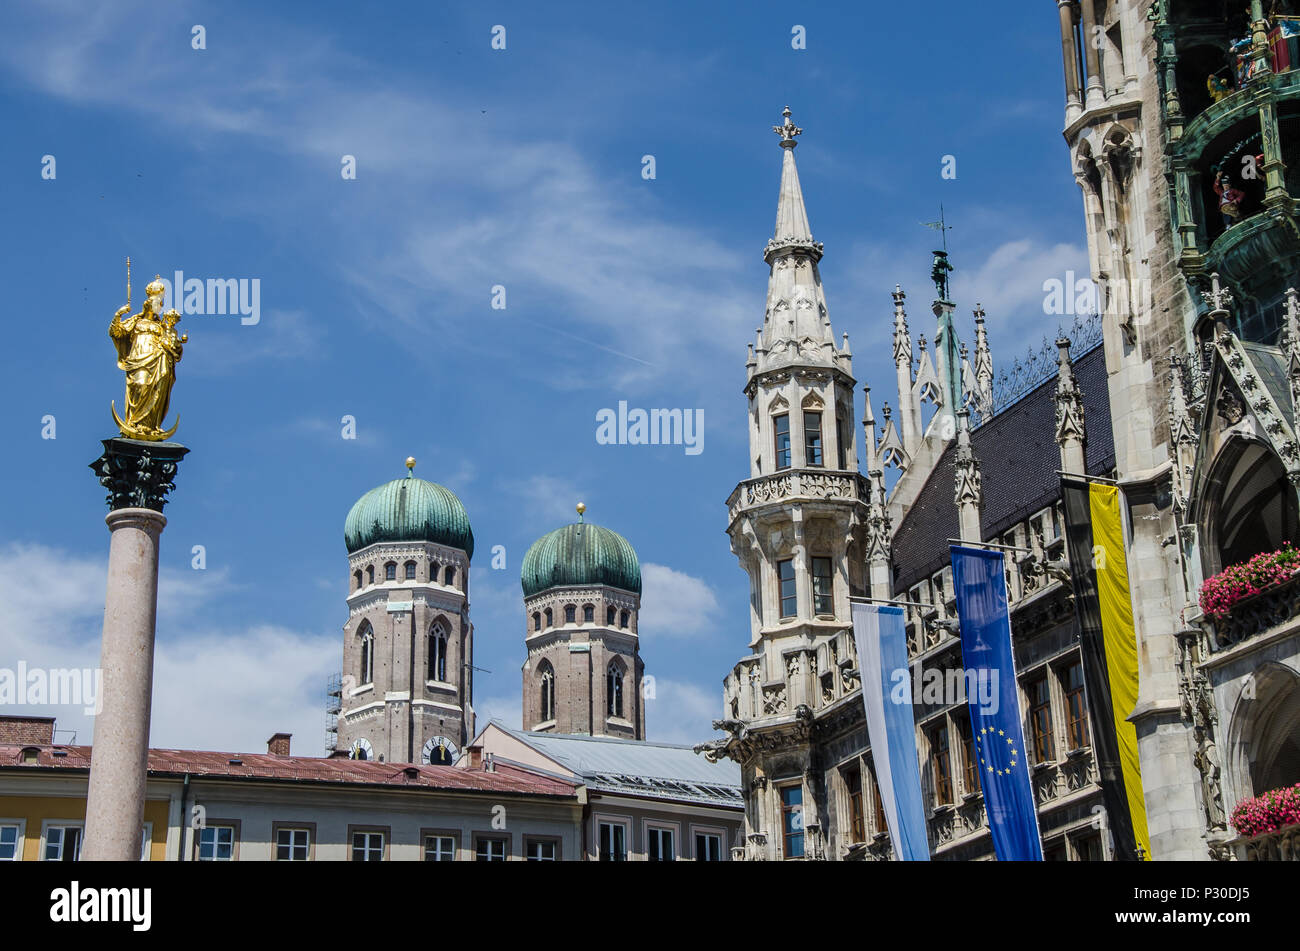 Marienplatz è la piazza centrale di Monaco di Baviera della Città Vecchia, il cuore urbano e il punto centrale della zona pedonale con il suo municipio neogotico. Foto Stock